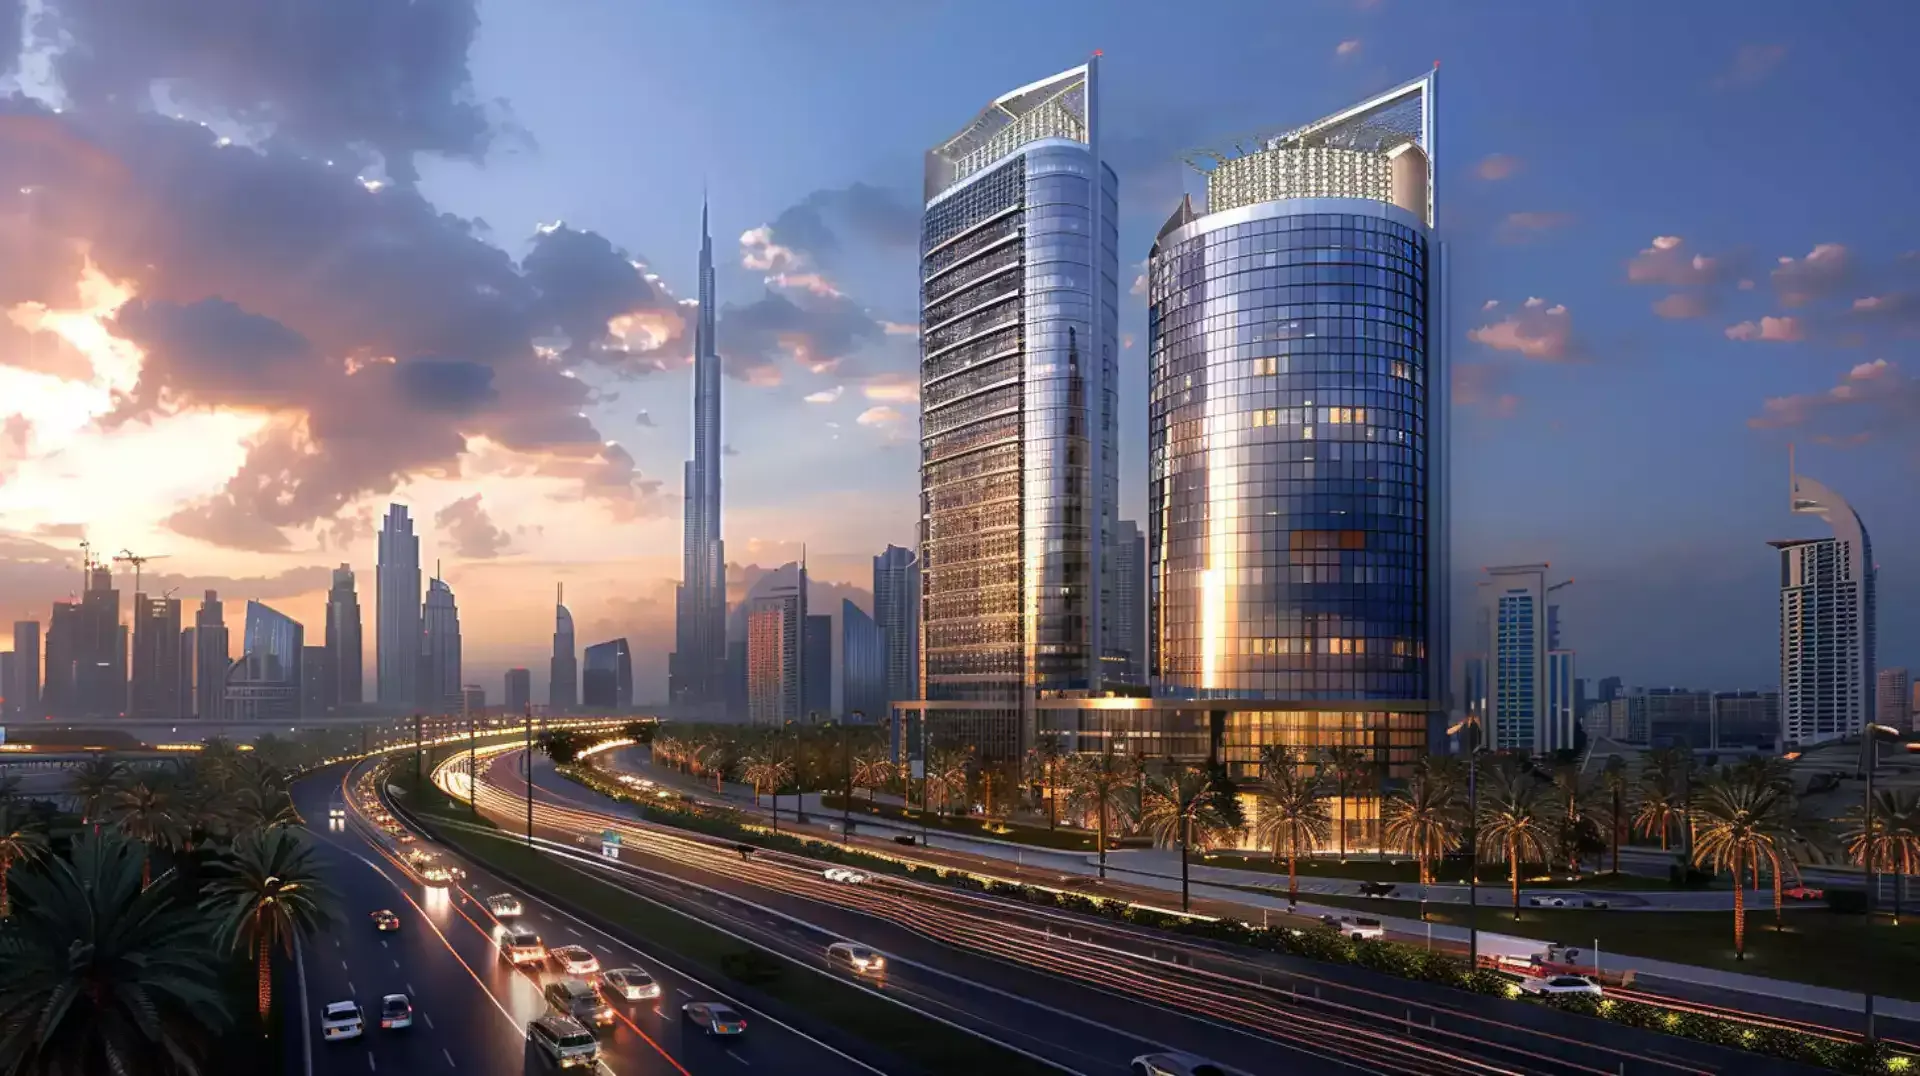 Startup in Dubai concept image